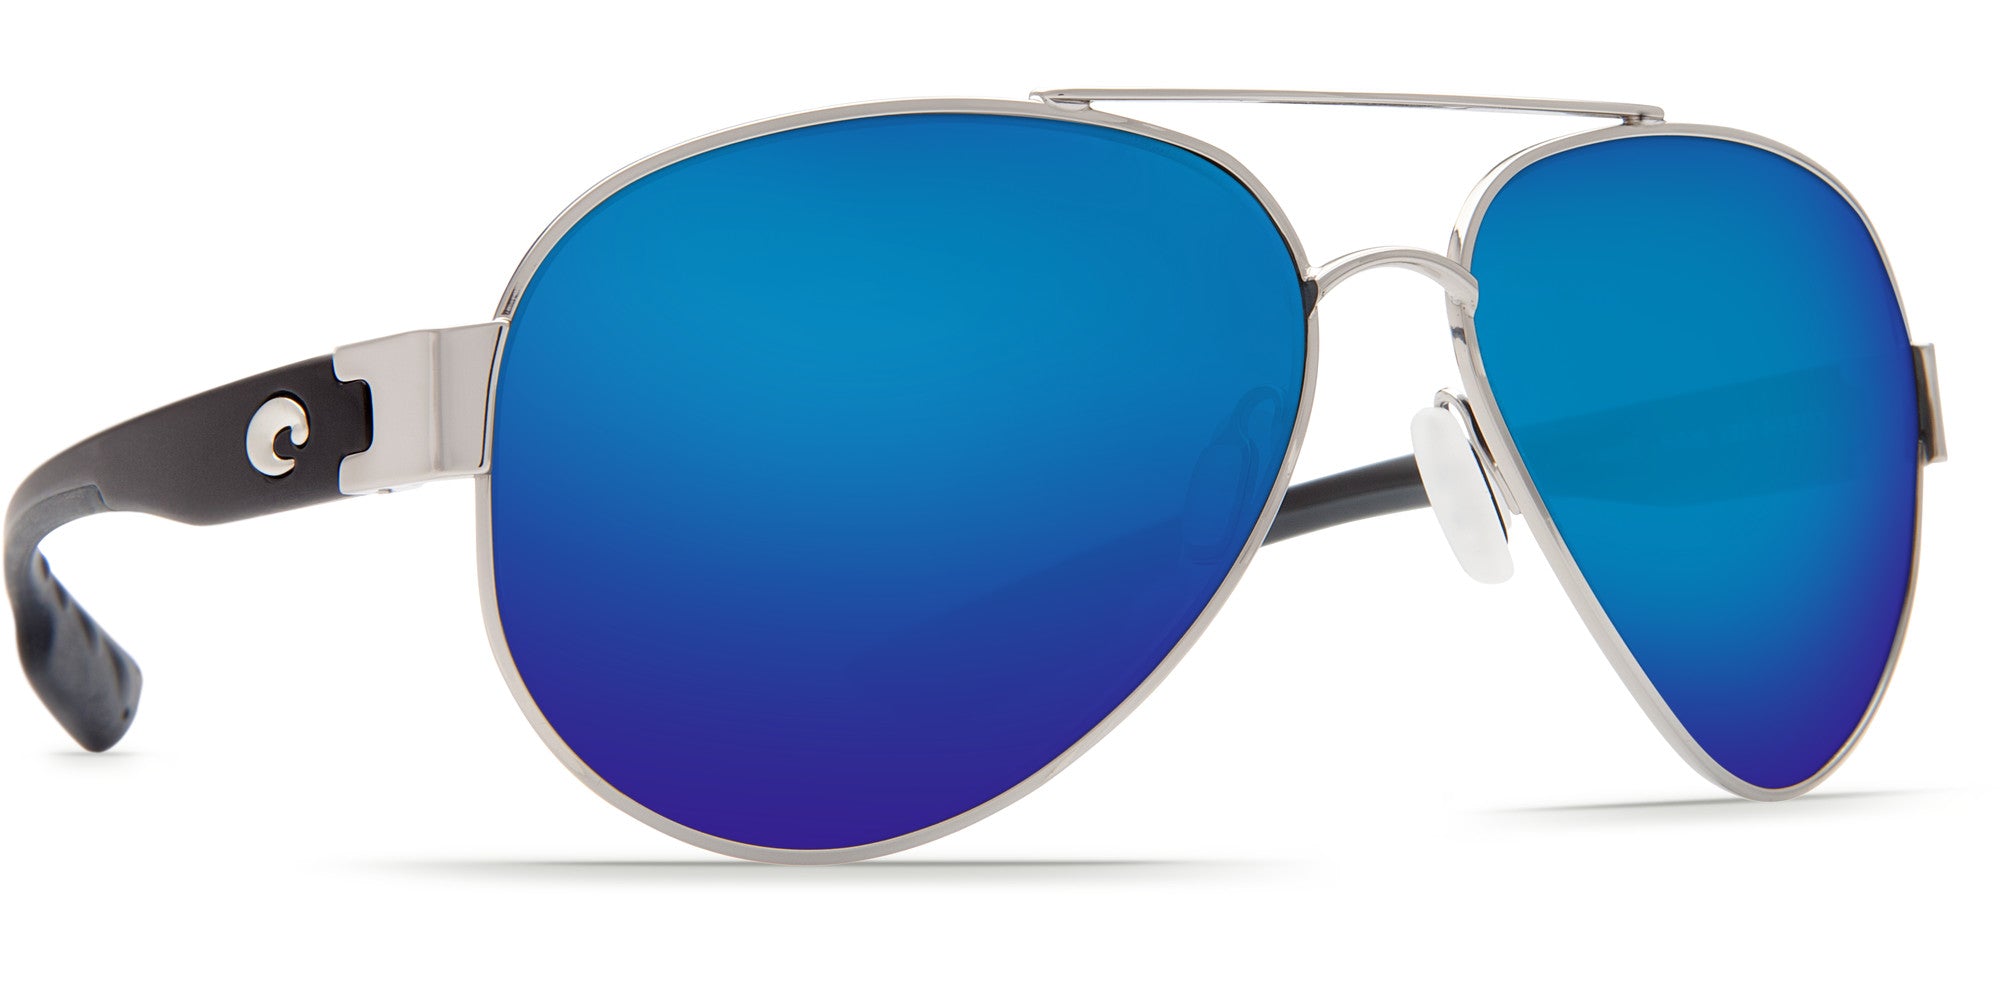 Costa Del Mar SouthPoint Polarized Sunglasses Palladium BlueMirror 580P